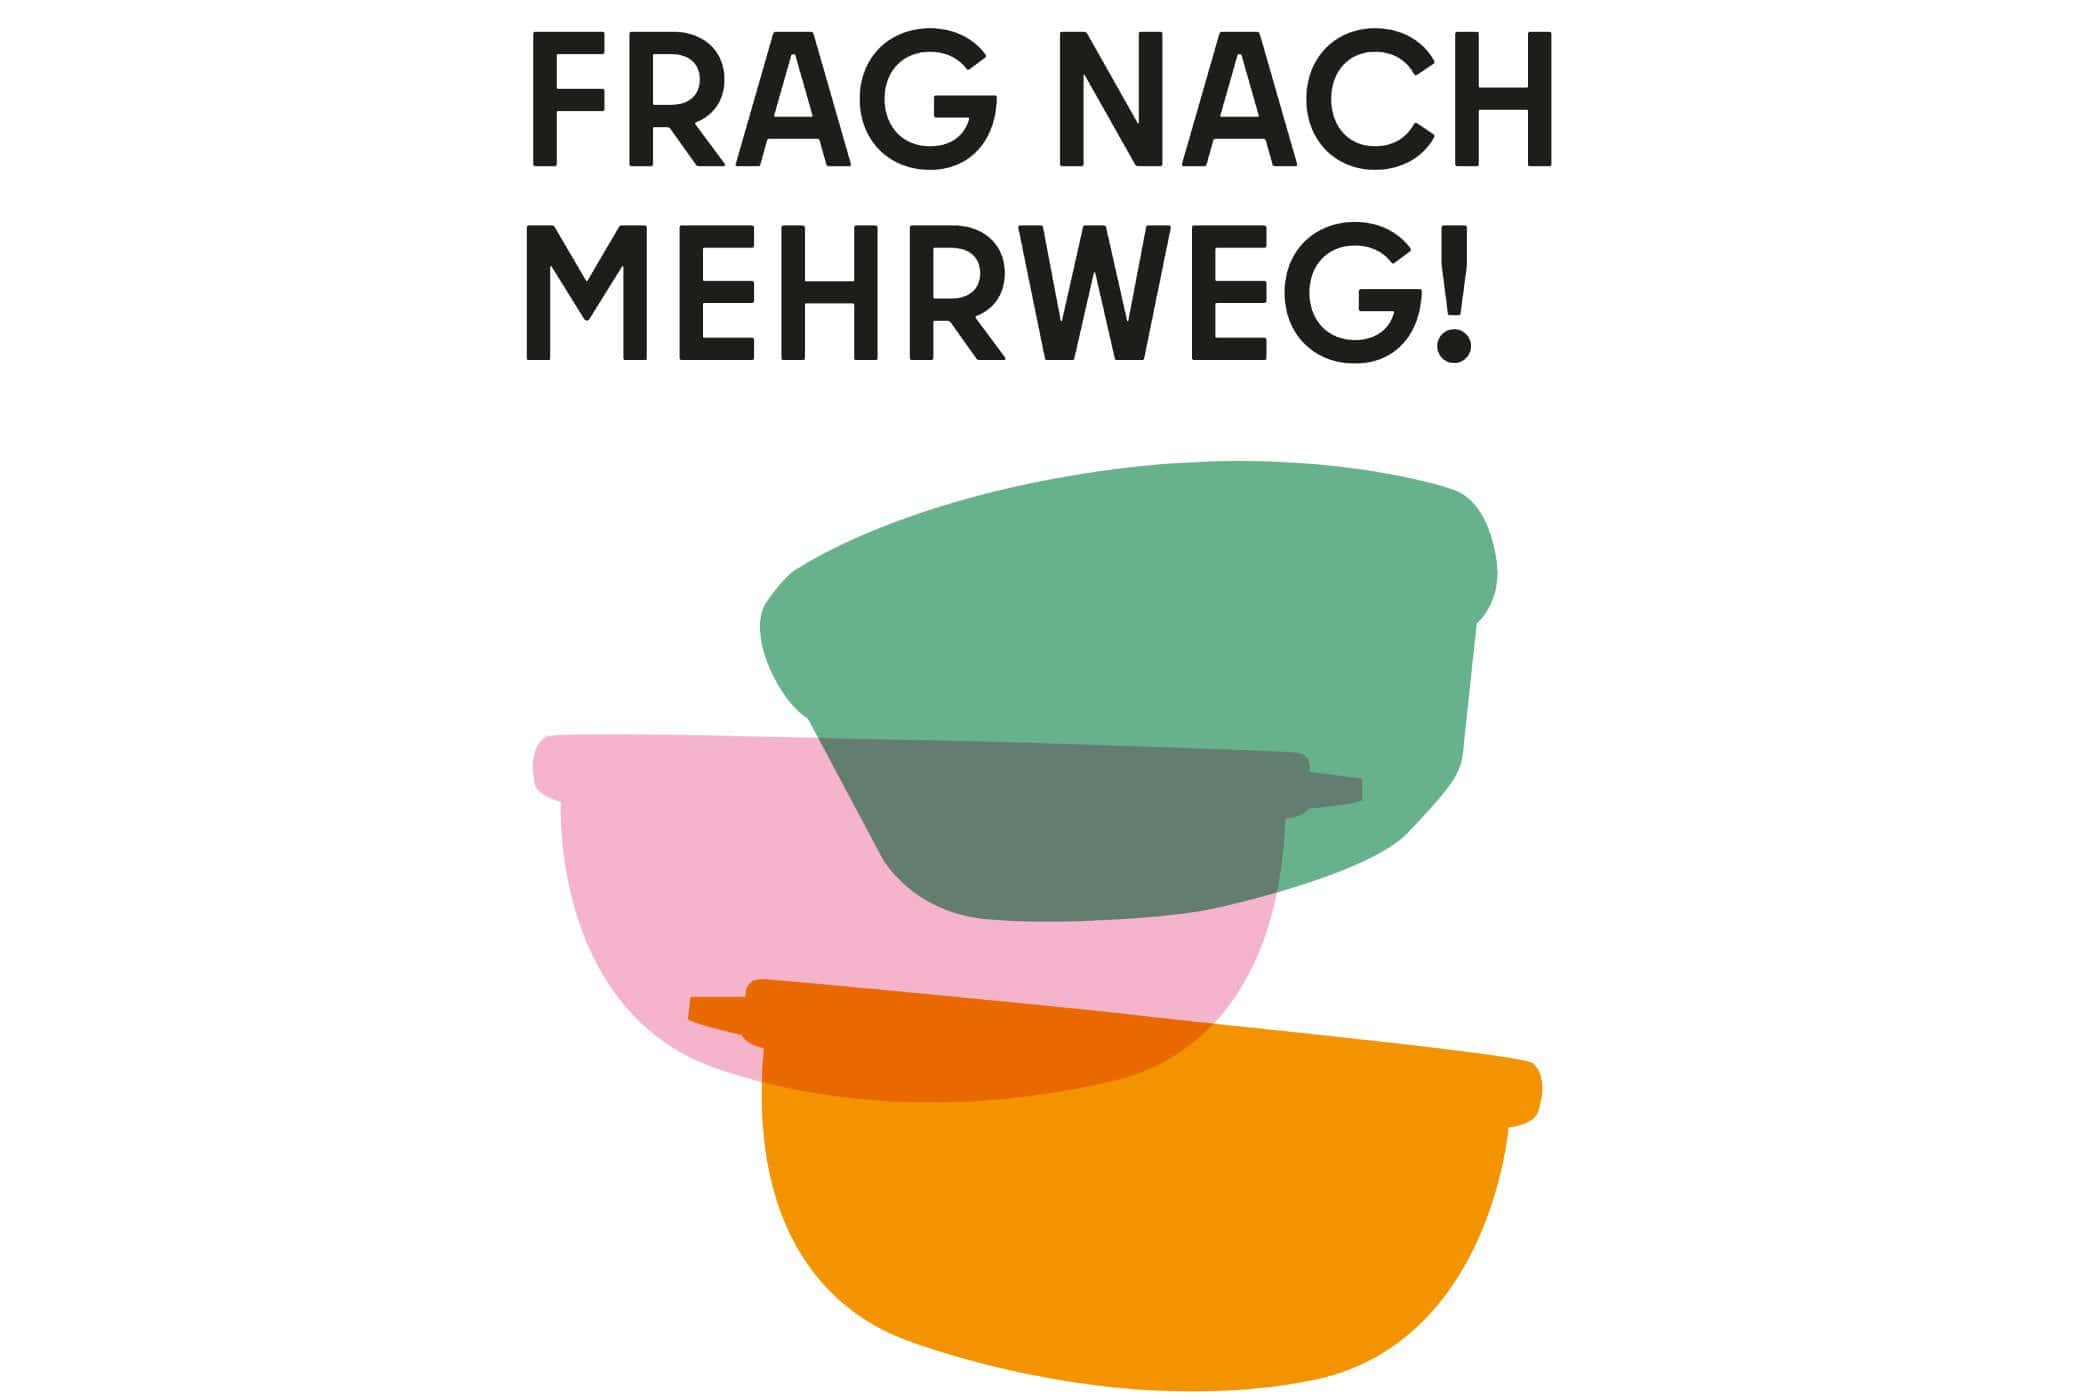 Neues Projekt 66 - management, gastronomie Frag nach Mehrweg: Finanzieller Support und Beratung für Gastrobetriebe in Friedrichshain-Kreuzberg